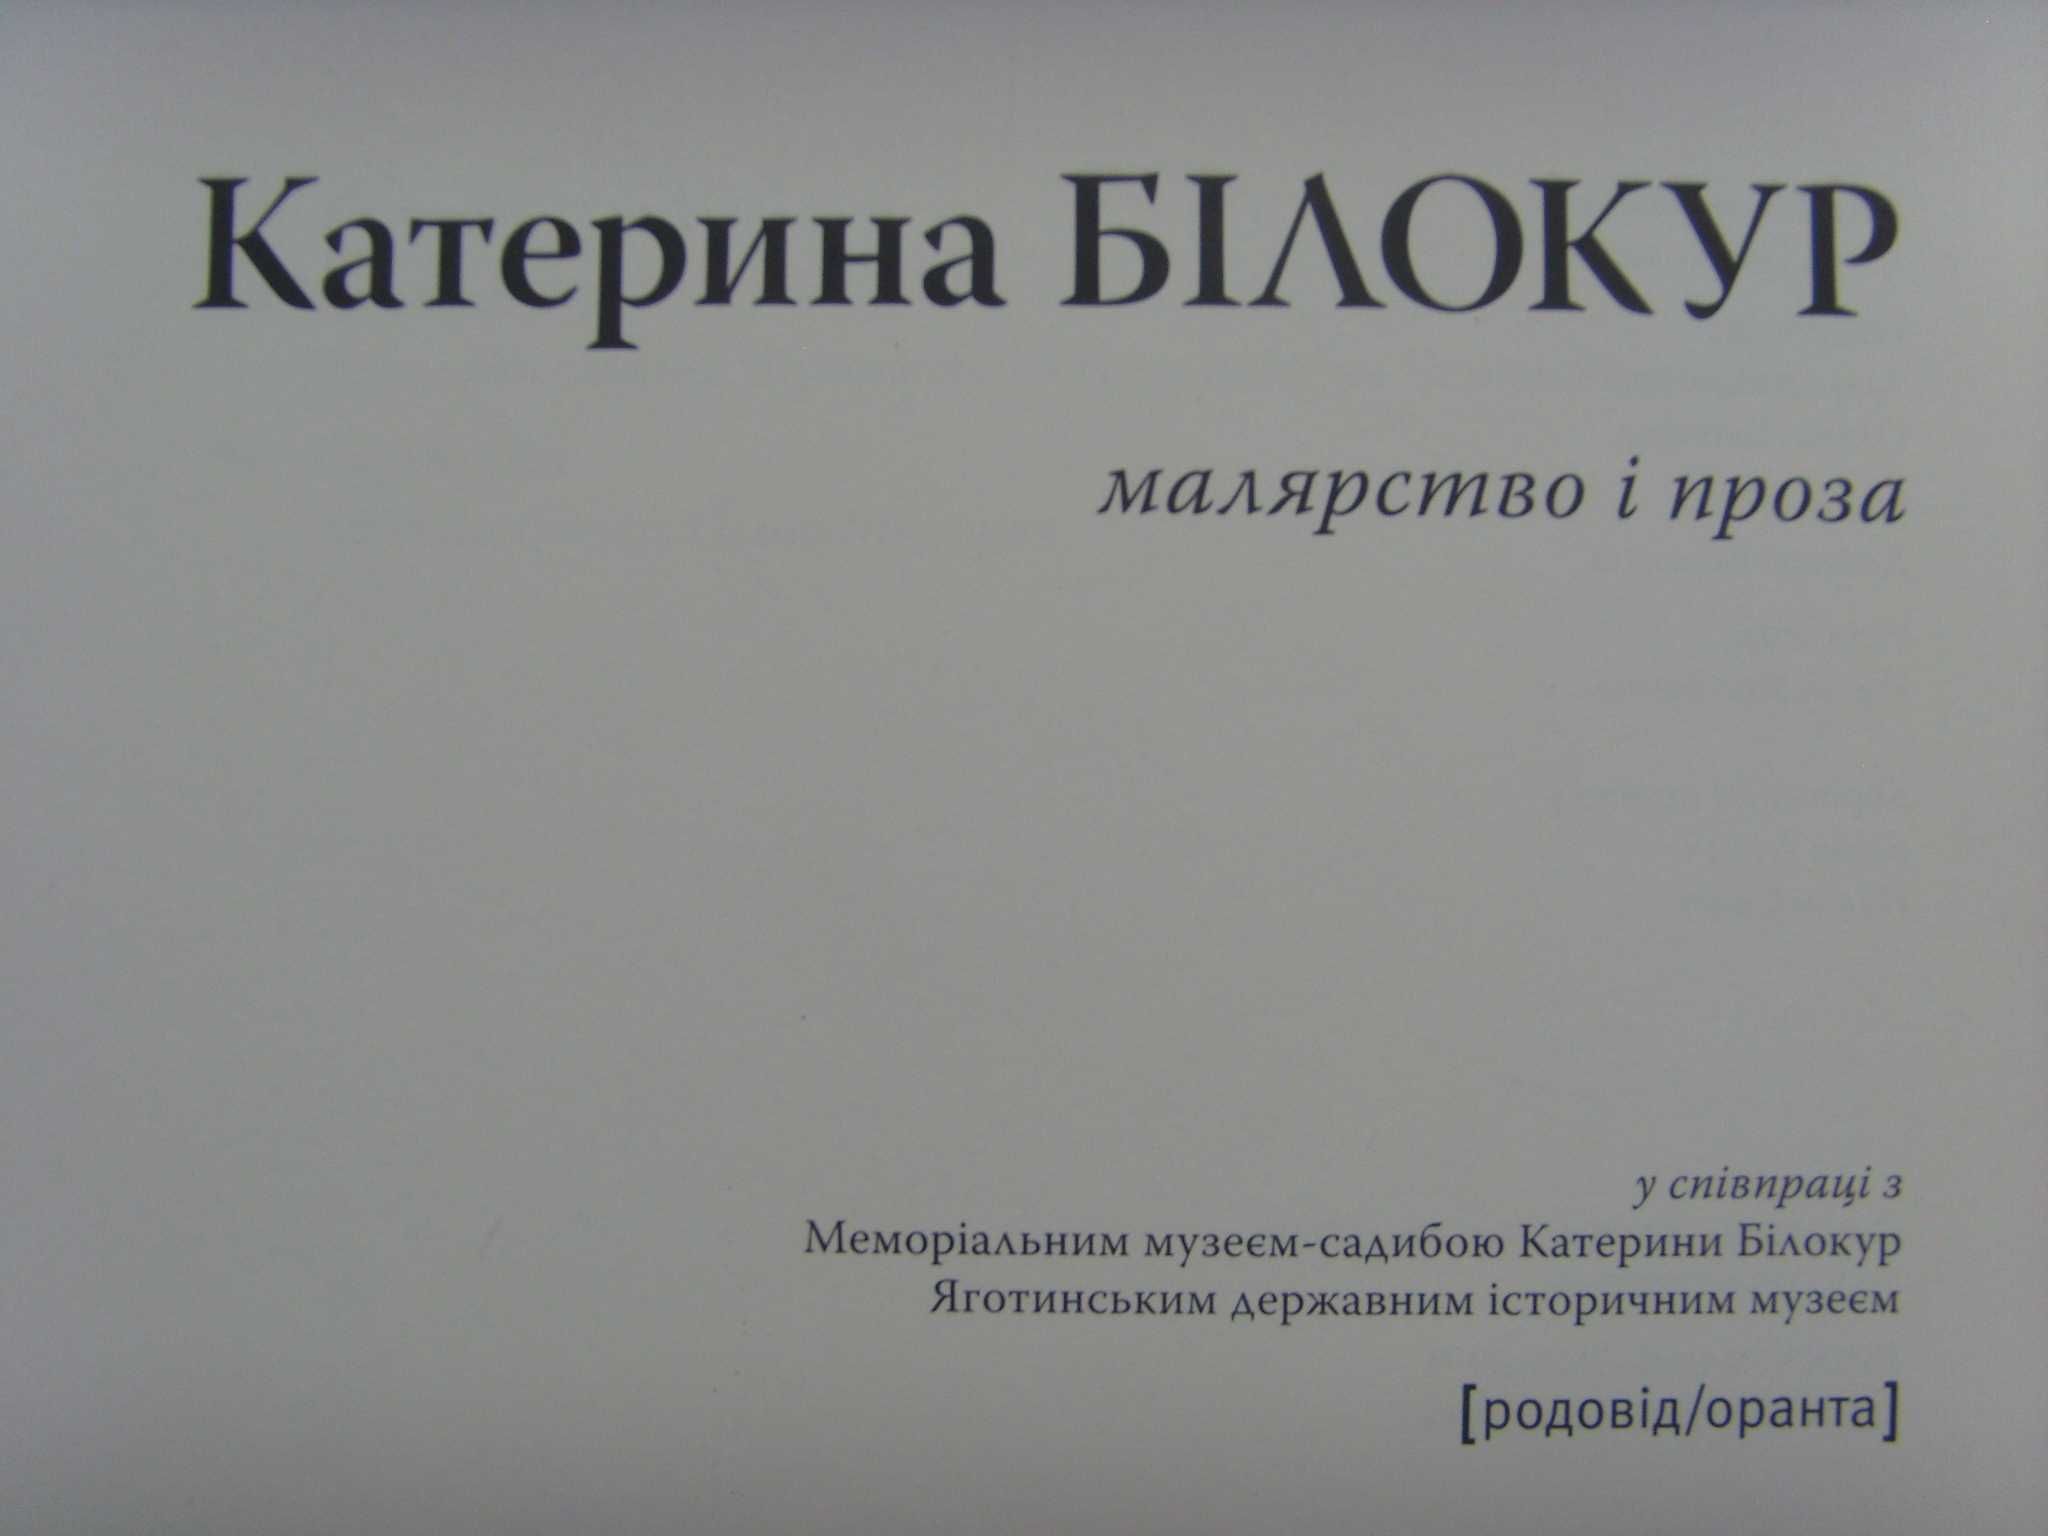 Книжка - альбом. Живопис, графіка, проза Катерини БІЛОКУР. 2009 рік.